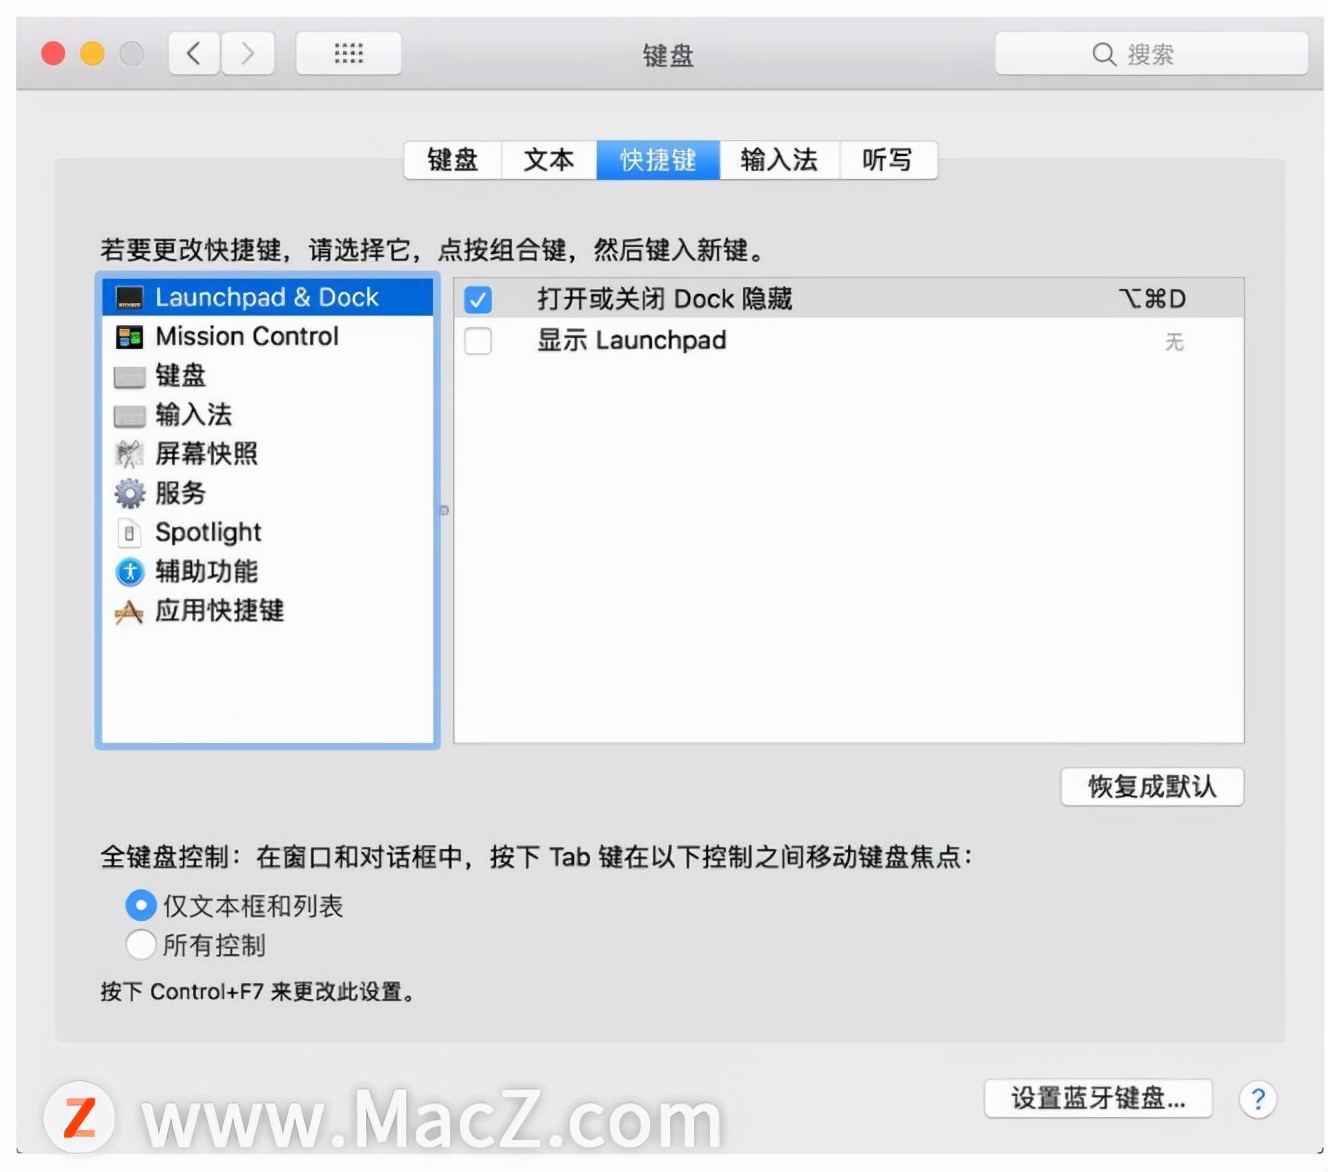 Mac新手需掌握的操作技巧——键盘快捷键篇